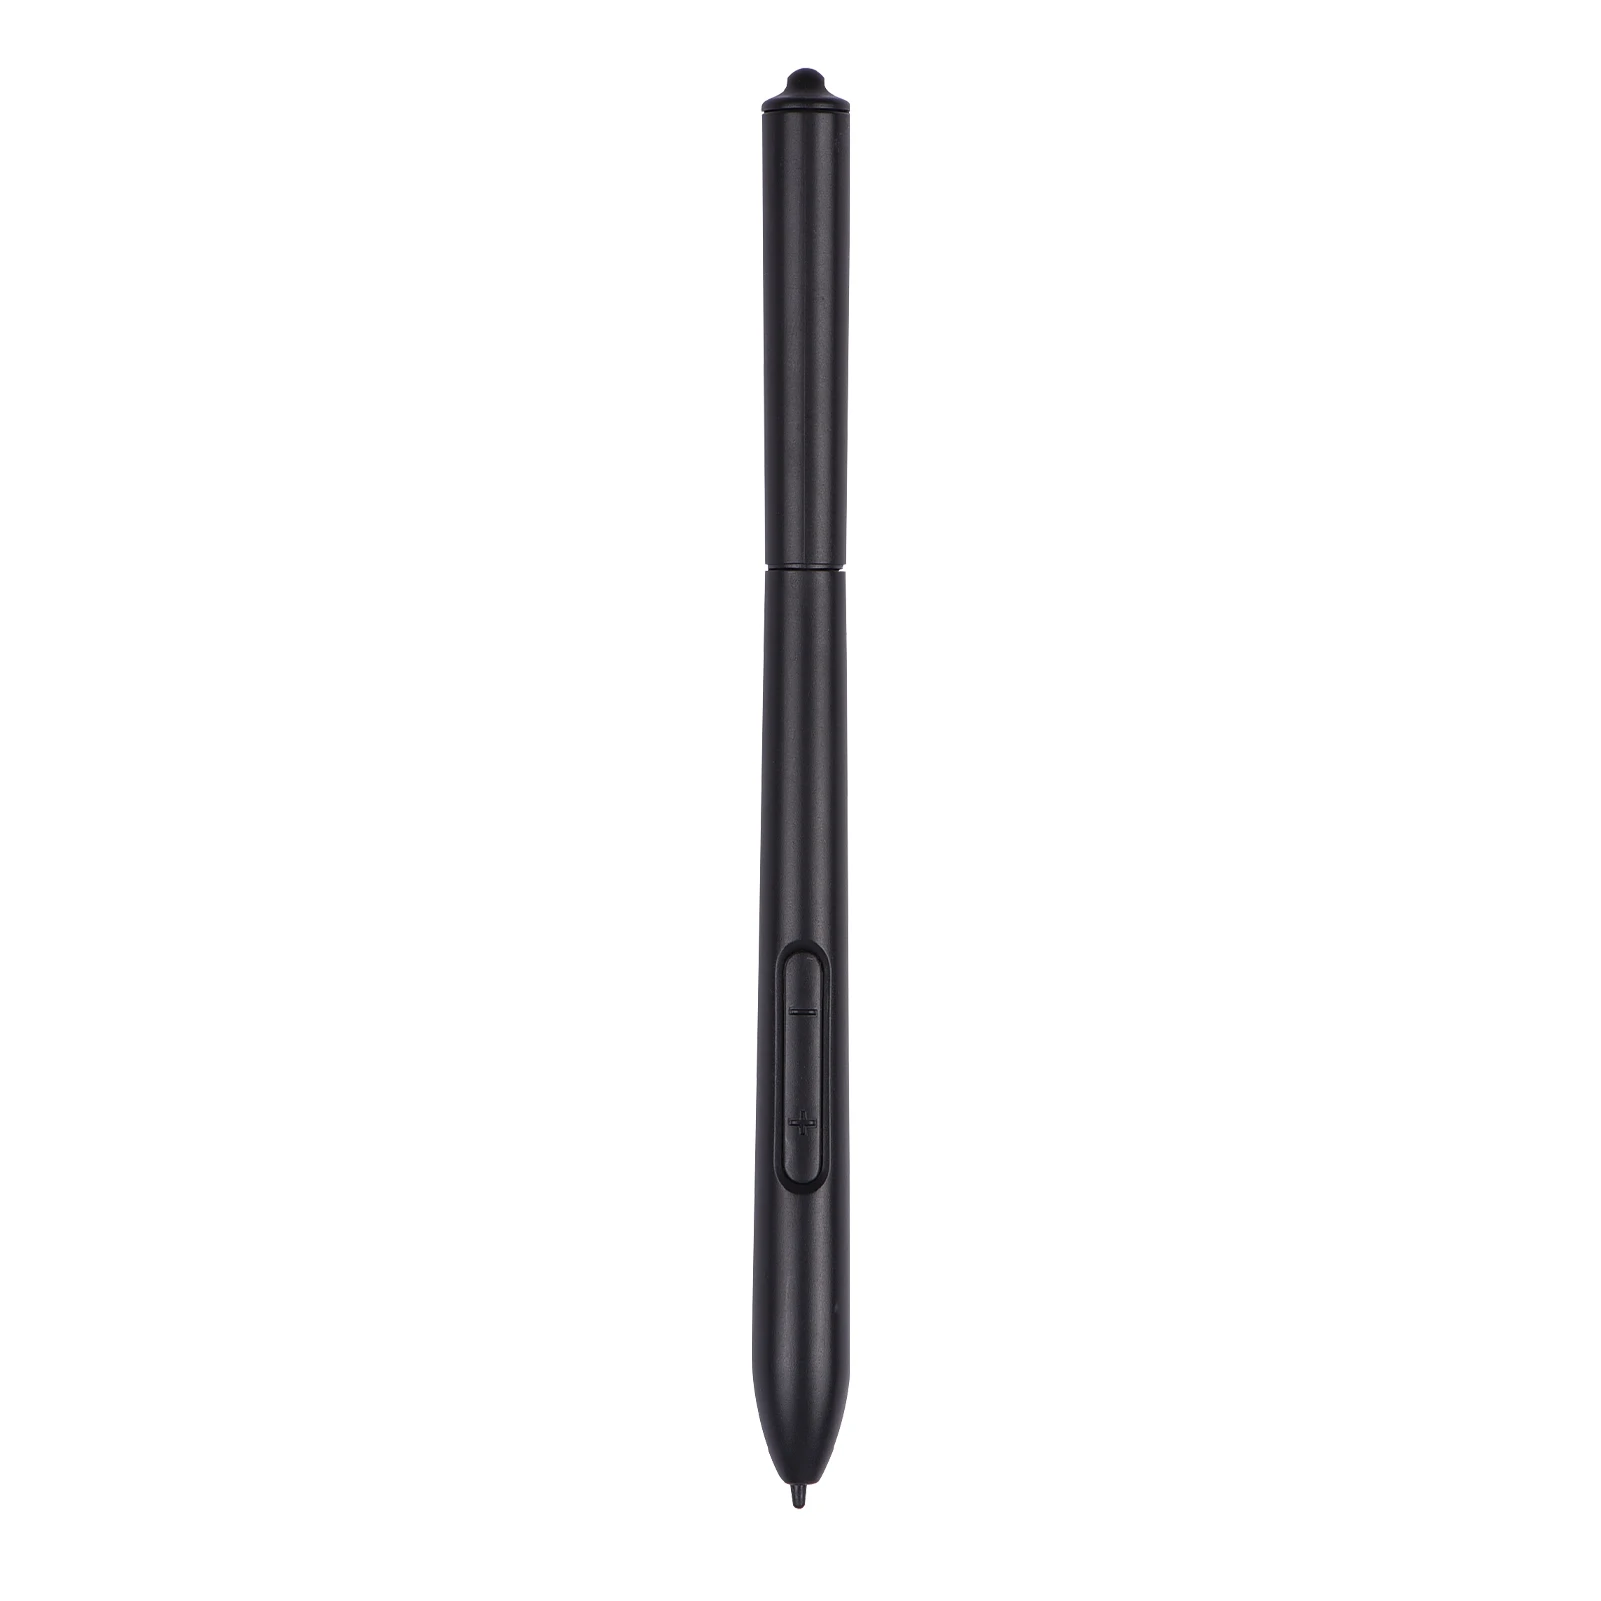 2021 New Excellent Quality Passive Stylus Pen Battery-Free Smart Pen Suitable For VINSA VIN1060PLUS/T608 Graphics Drawing Tablet